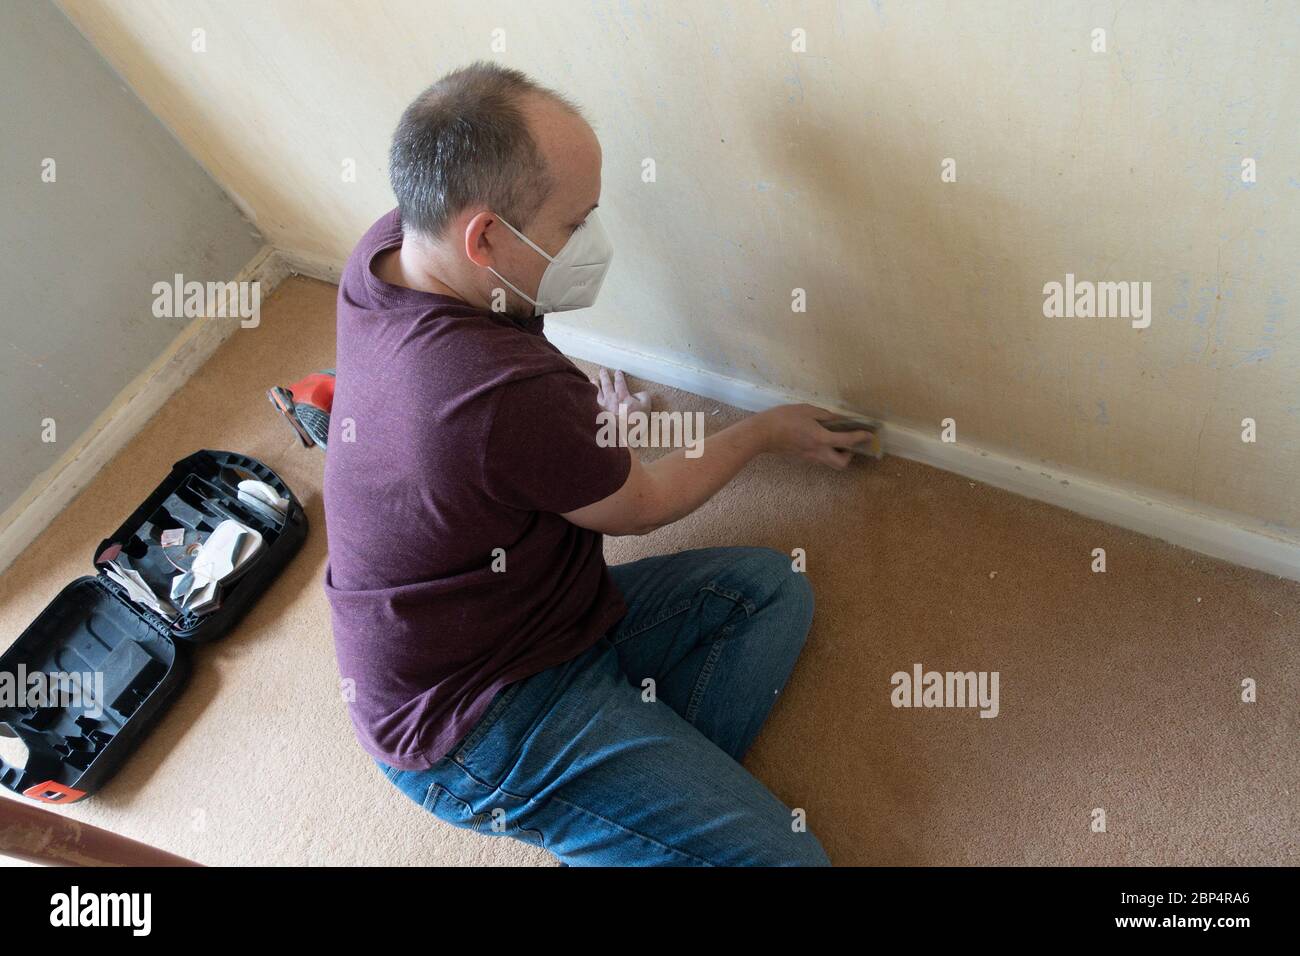 Ein Mann mittleren Alters, der die Sockelleiste vor dem Malen als Aprt eines DIY-Projekts abschleift. Stockfoto